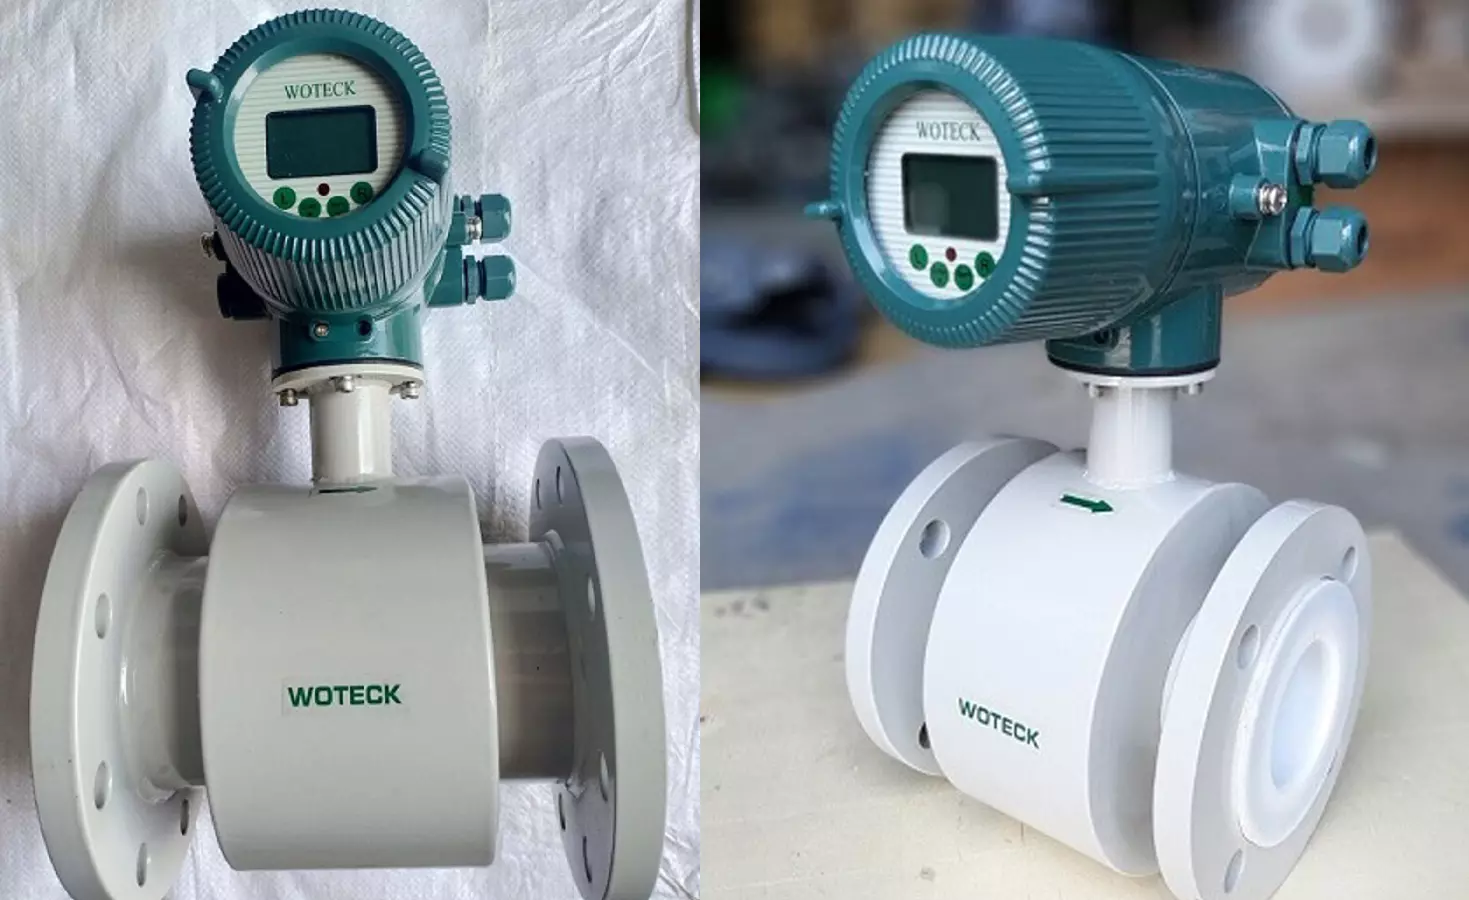 Hình ảnh về đồng hồ đo lưu lượng nước điện từ Woteck